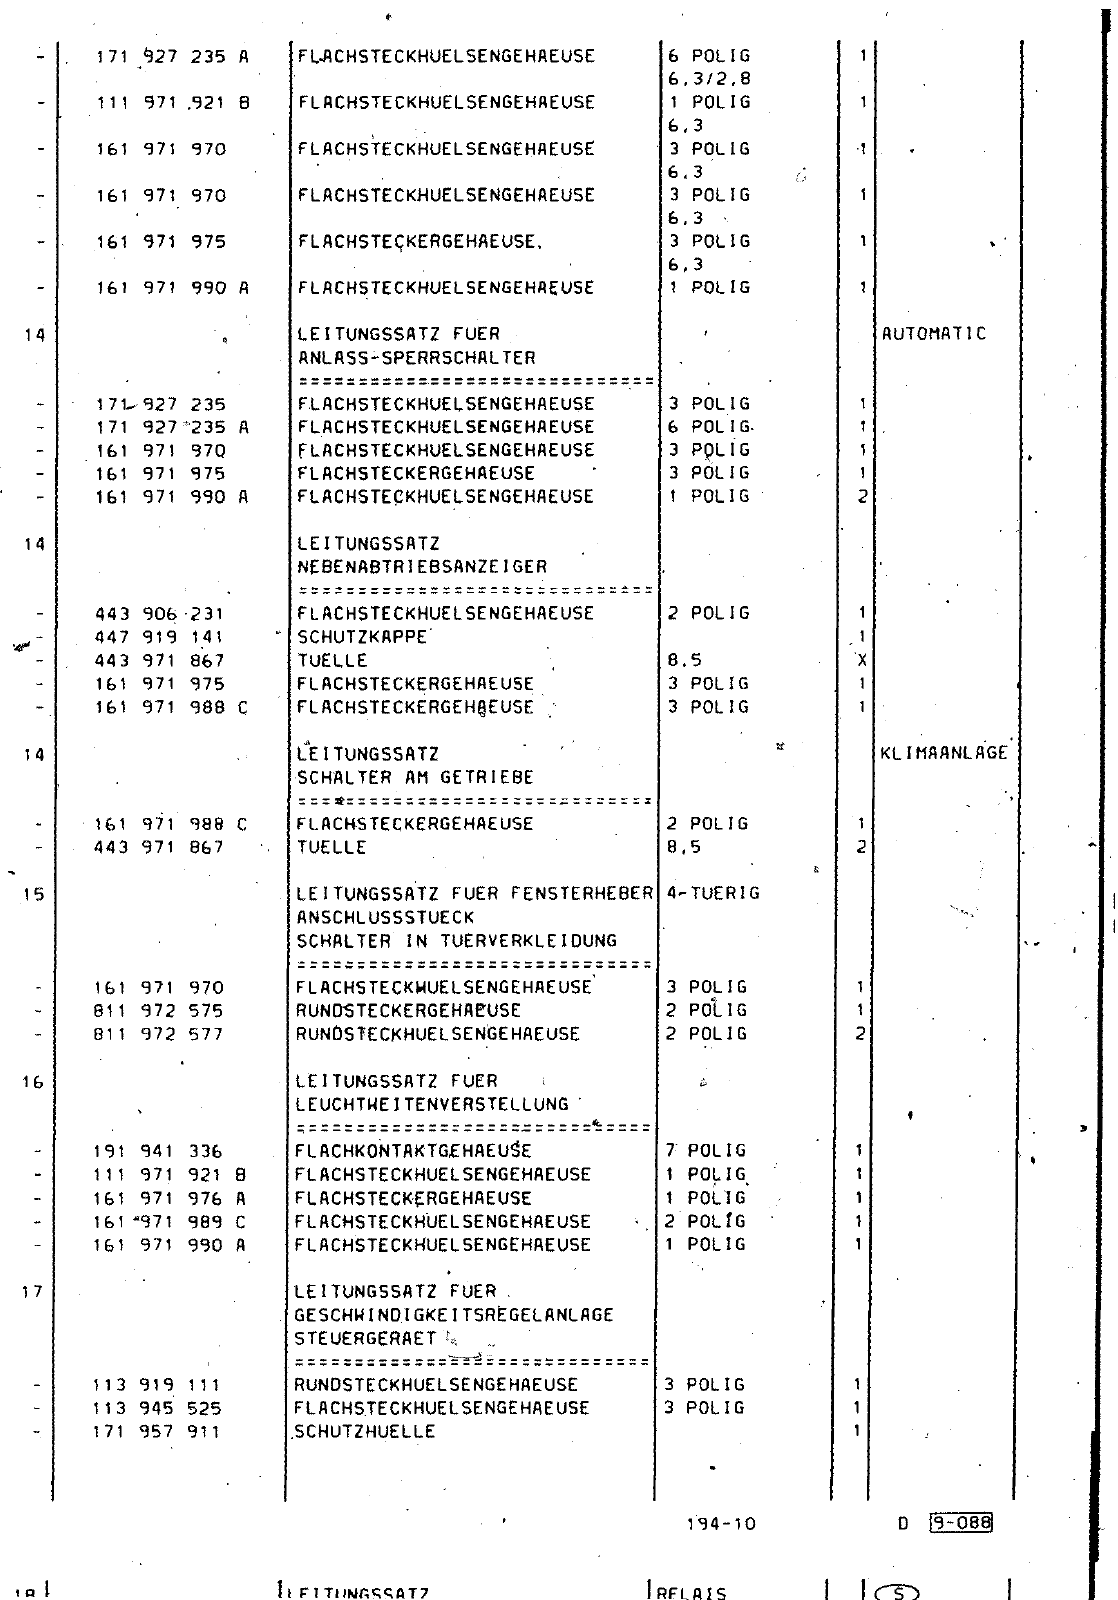 Vorschau Passat Mod 87-88 Seite 1014